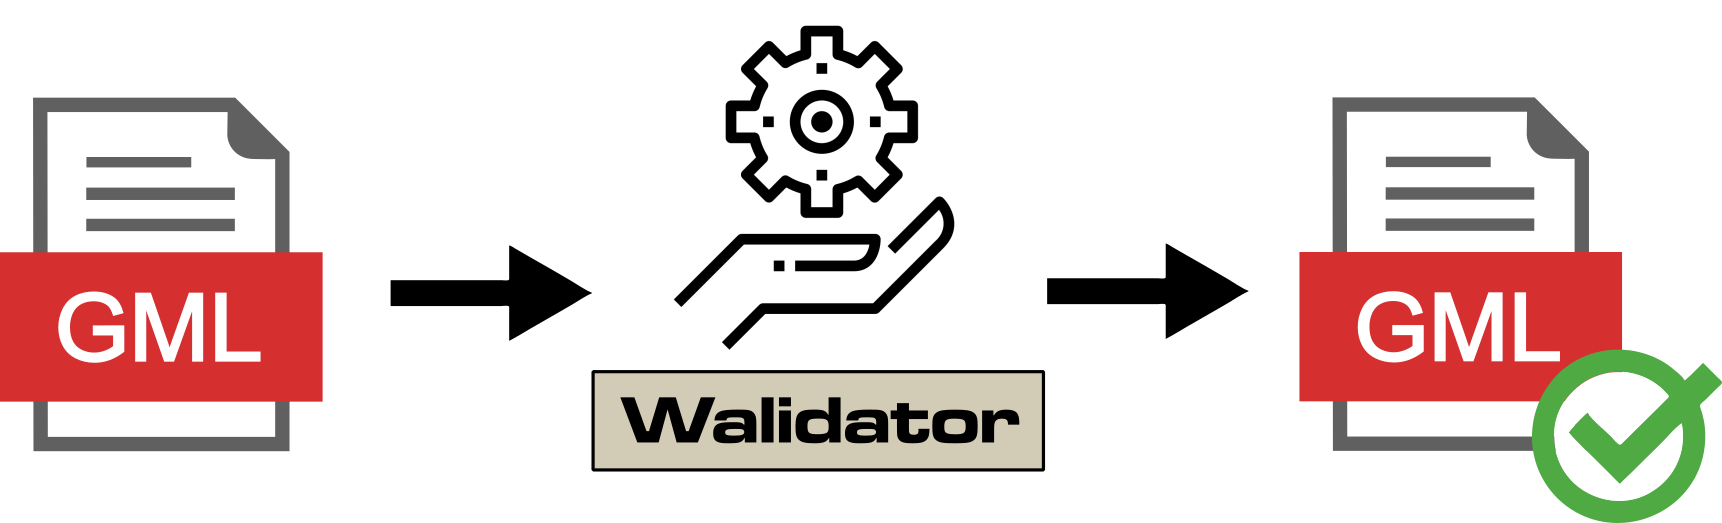 Ilustracja przedstawia wizualizację pliku GML, strzałkę z napisem "Walidator" oraz plik GML oznaczony, jako poprawny.